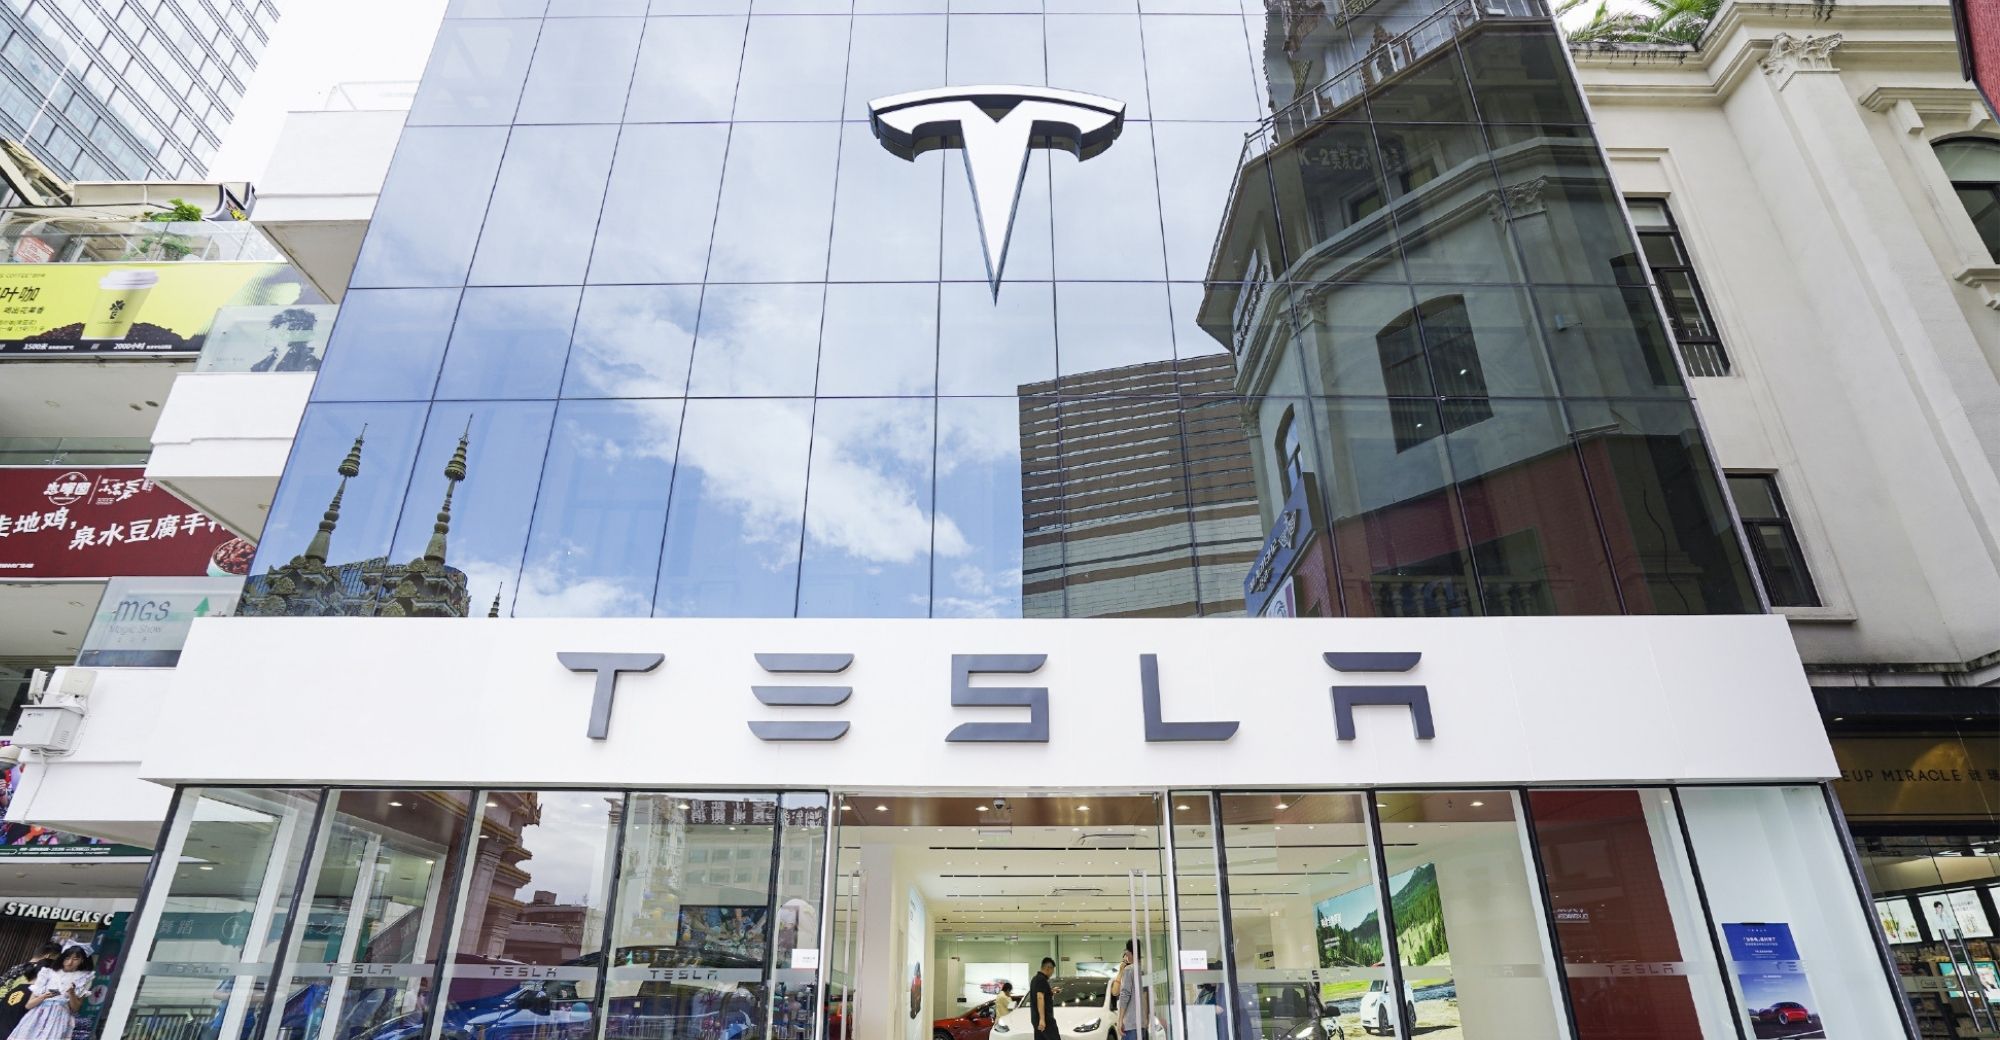 Tesla memendekkan masa penghantaran kenderaan pacuan roda belakang Y di China hingga 1-4 minggu